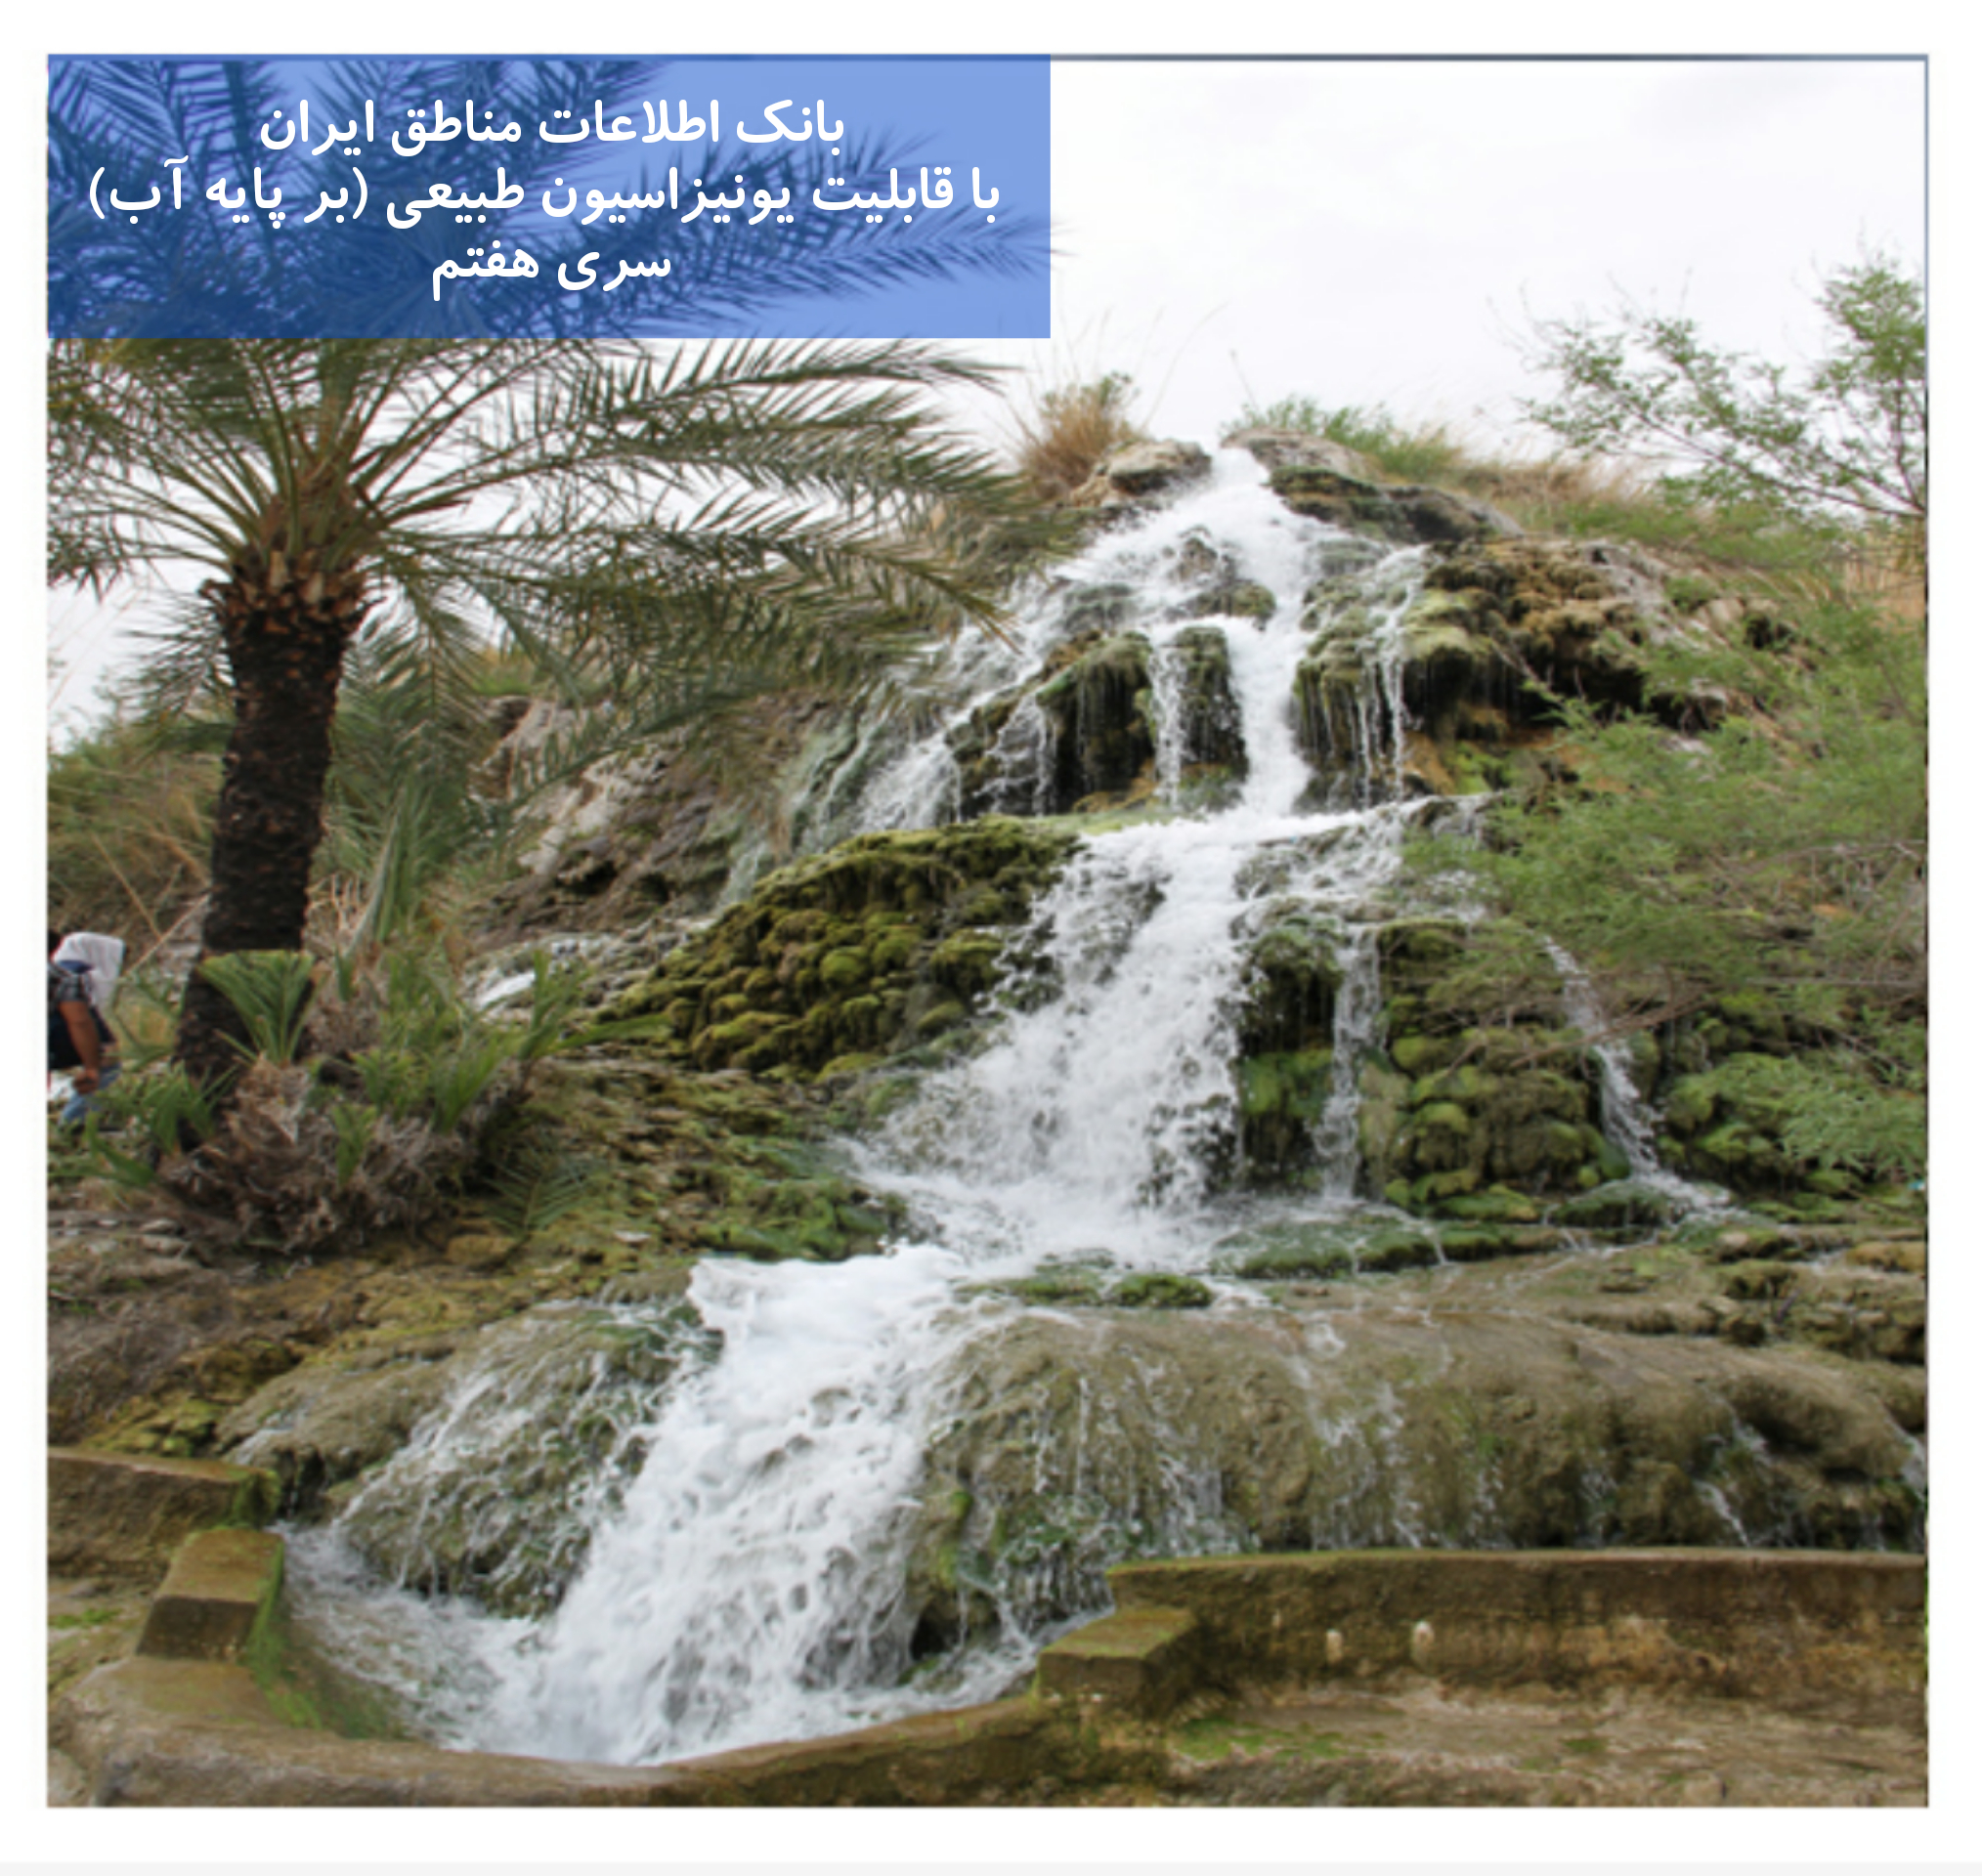 بانک اطلاعات مناطق ایران با خواص یونیزاسیون طبیعی بر پایه آب (7)